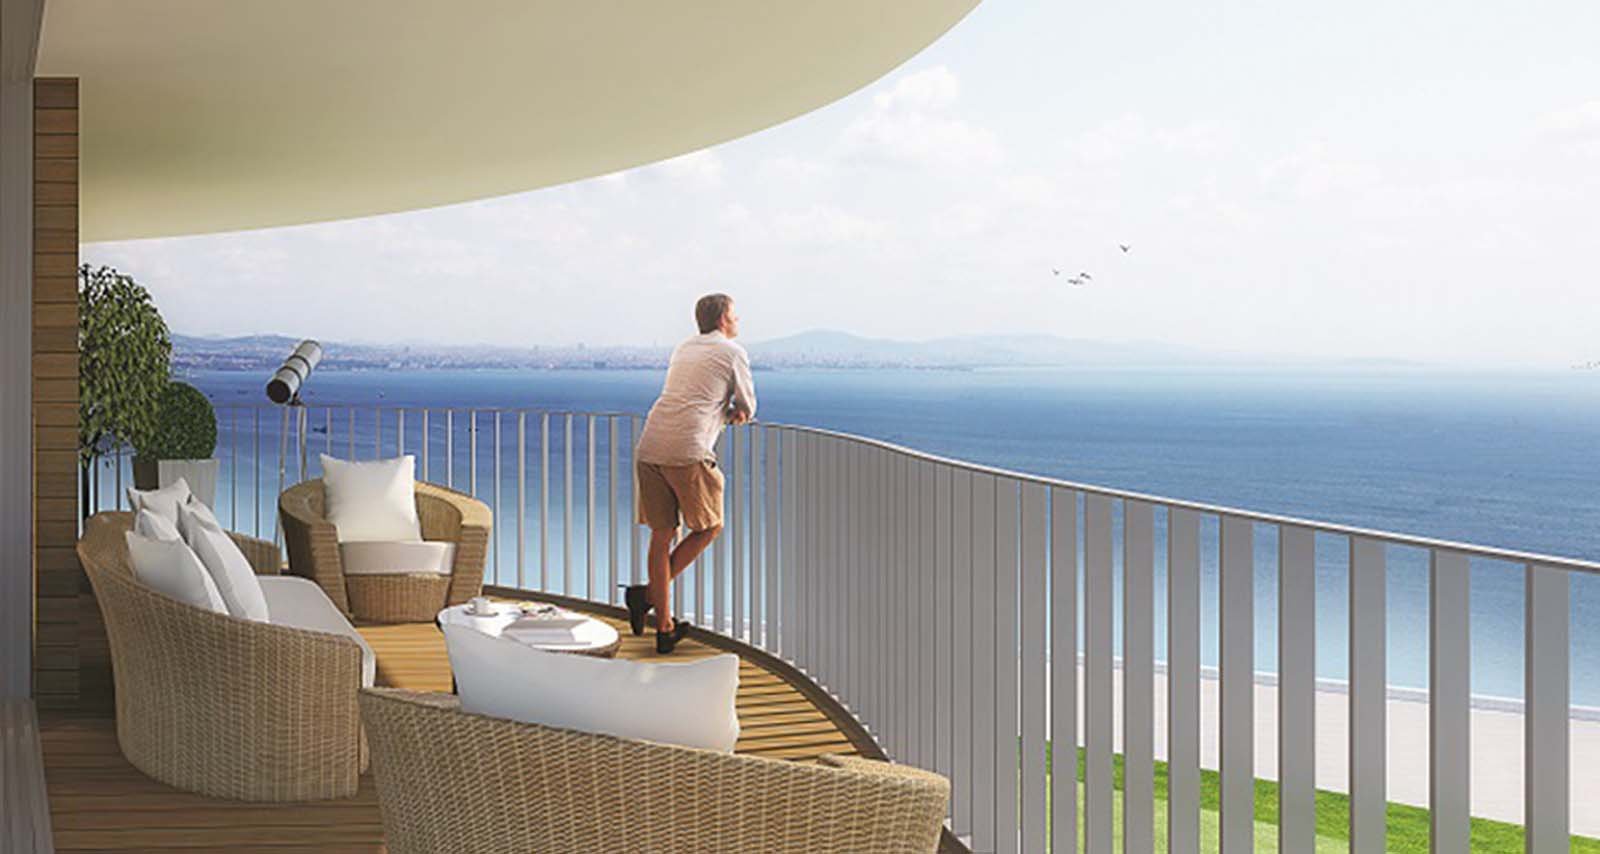 Теперь волны поднимались выше балкона. Вид на море с балкона. Лоджия с видом на море. Living Room с балконом с видом на море. Небольшой балкон с видом на море.